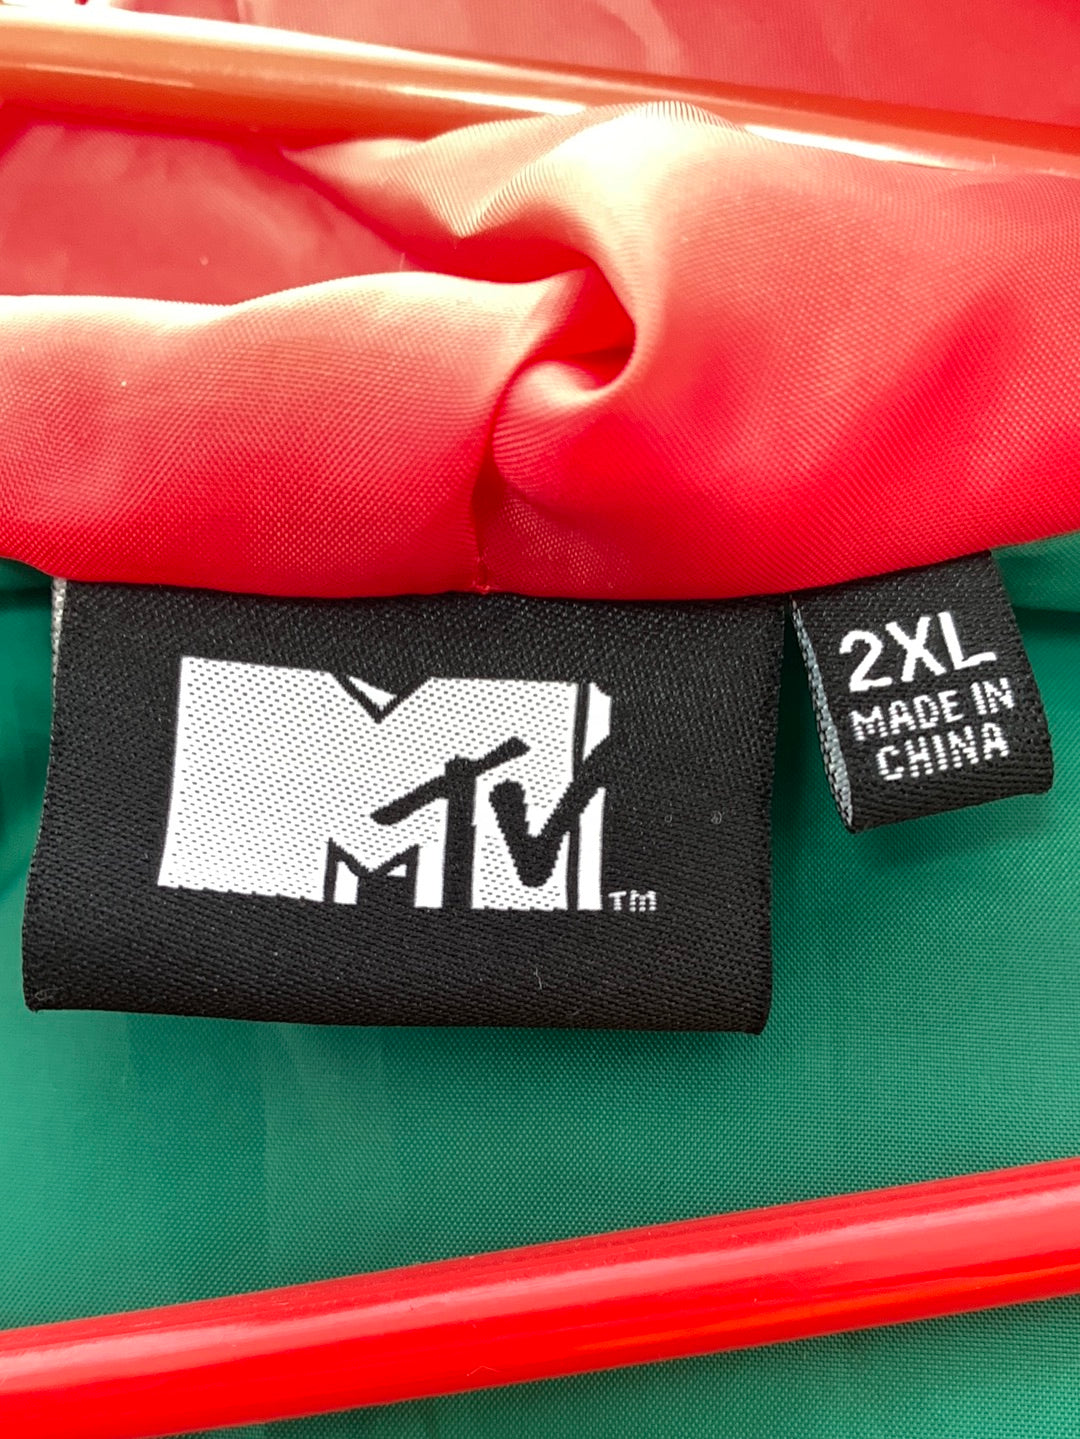 MTV 2020 Viacom Official Colorblock Windbreaker Full Zip Hoodie Jacket - 2XL